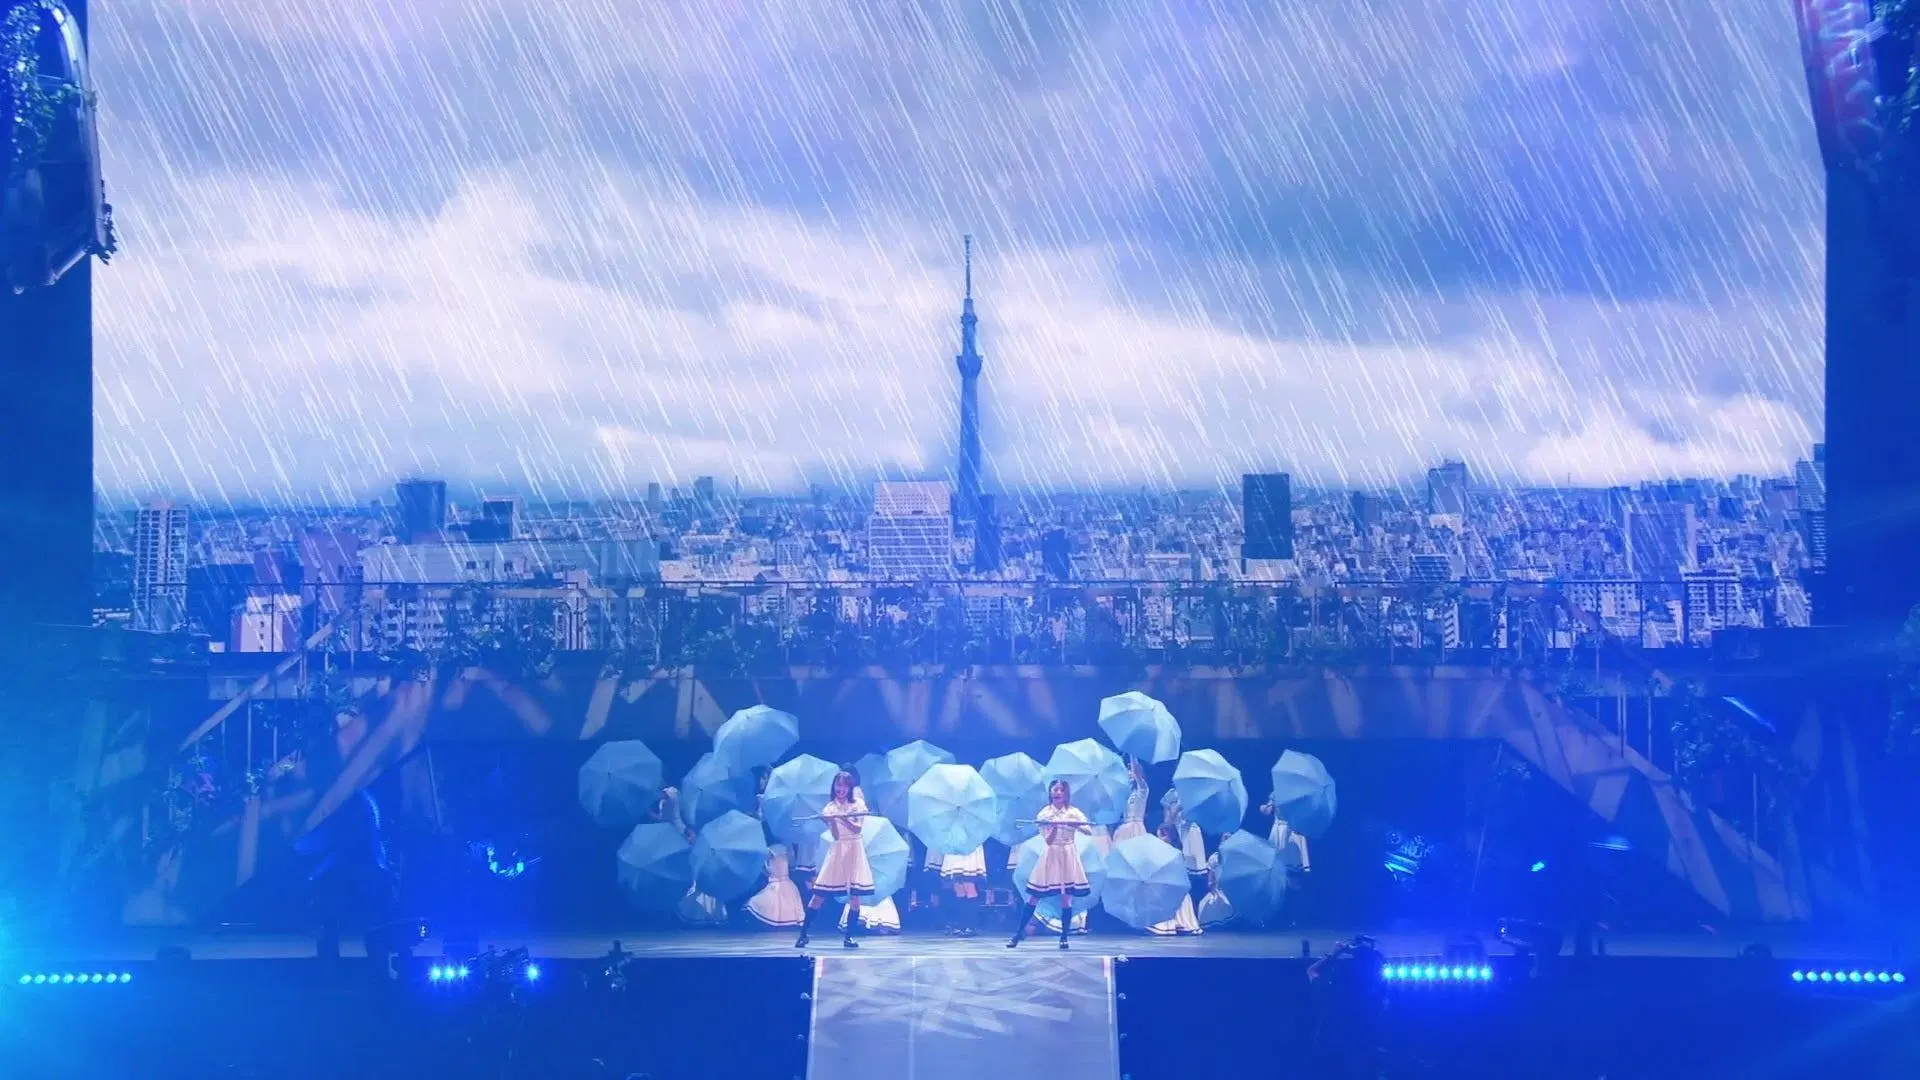 欅坂46首张东京巨蛋影像作品将发售预览片段youtube公开